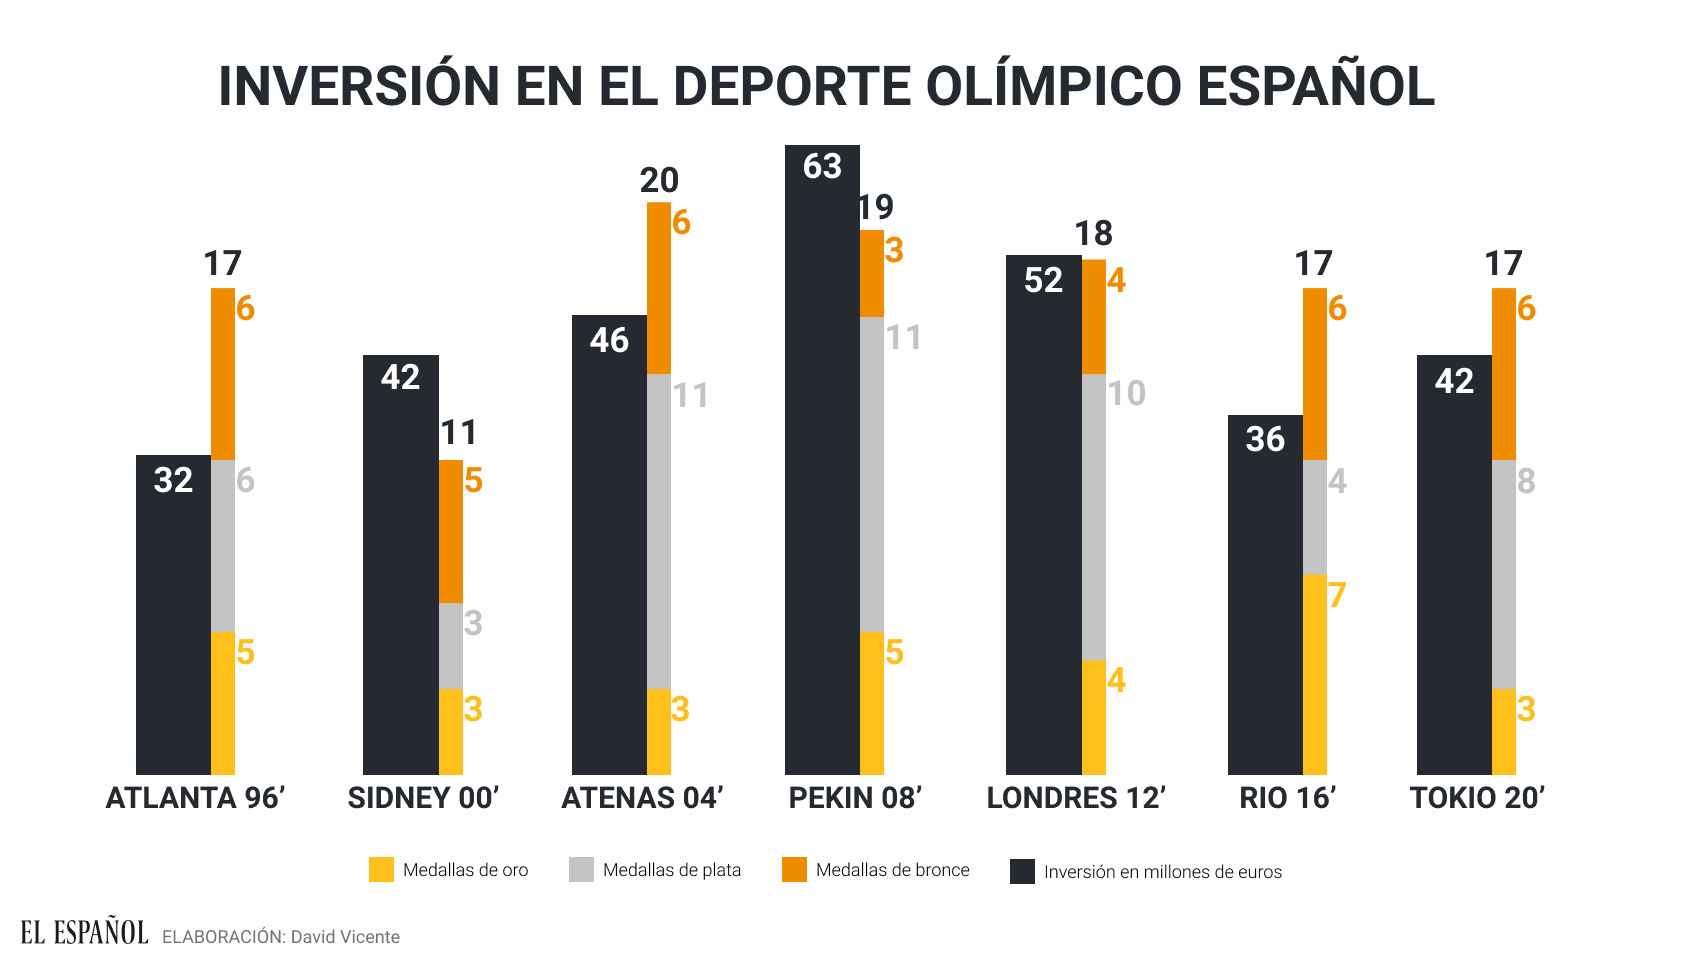 Inversión en el deporte olímpico español en los últimos años